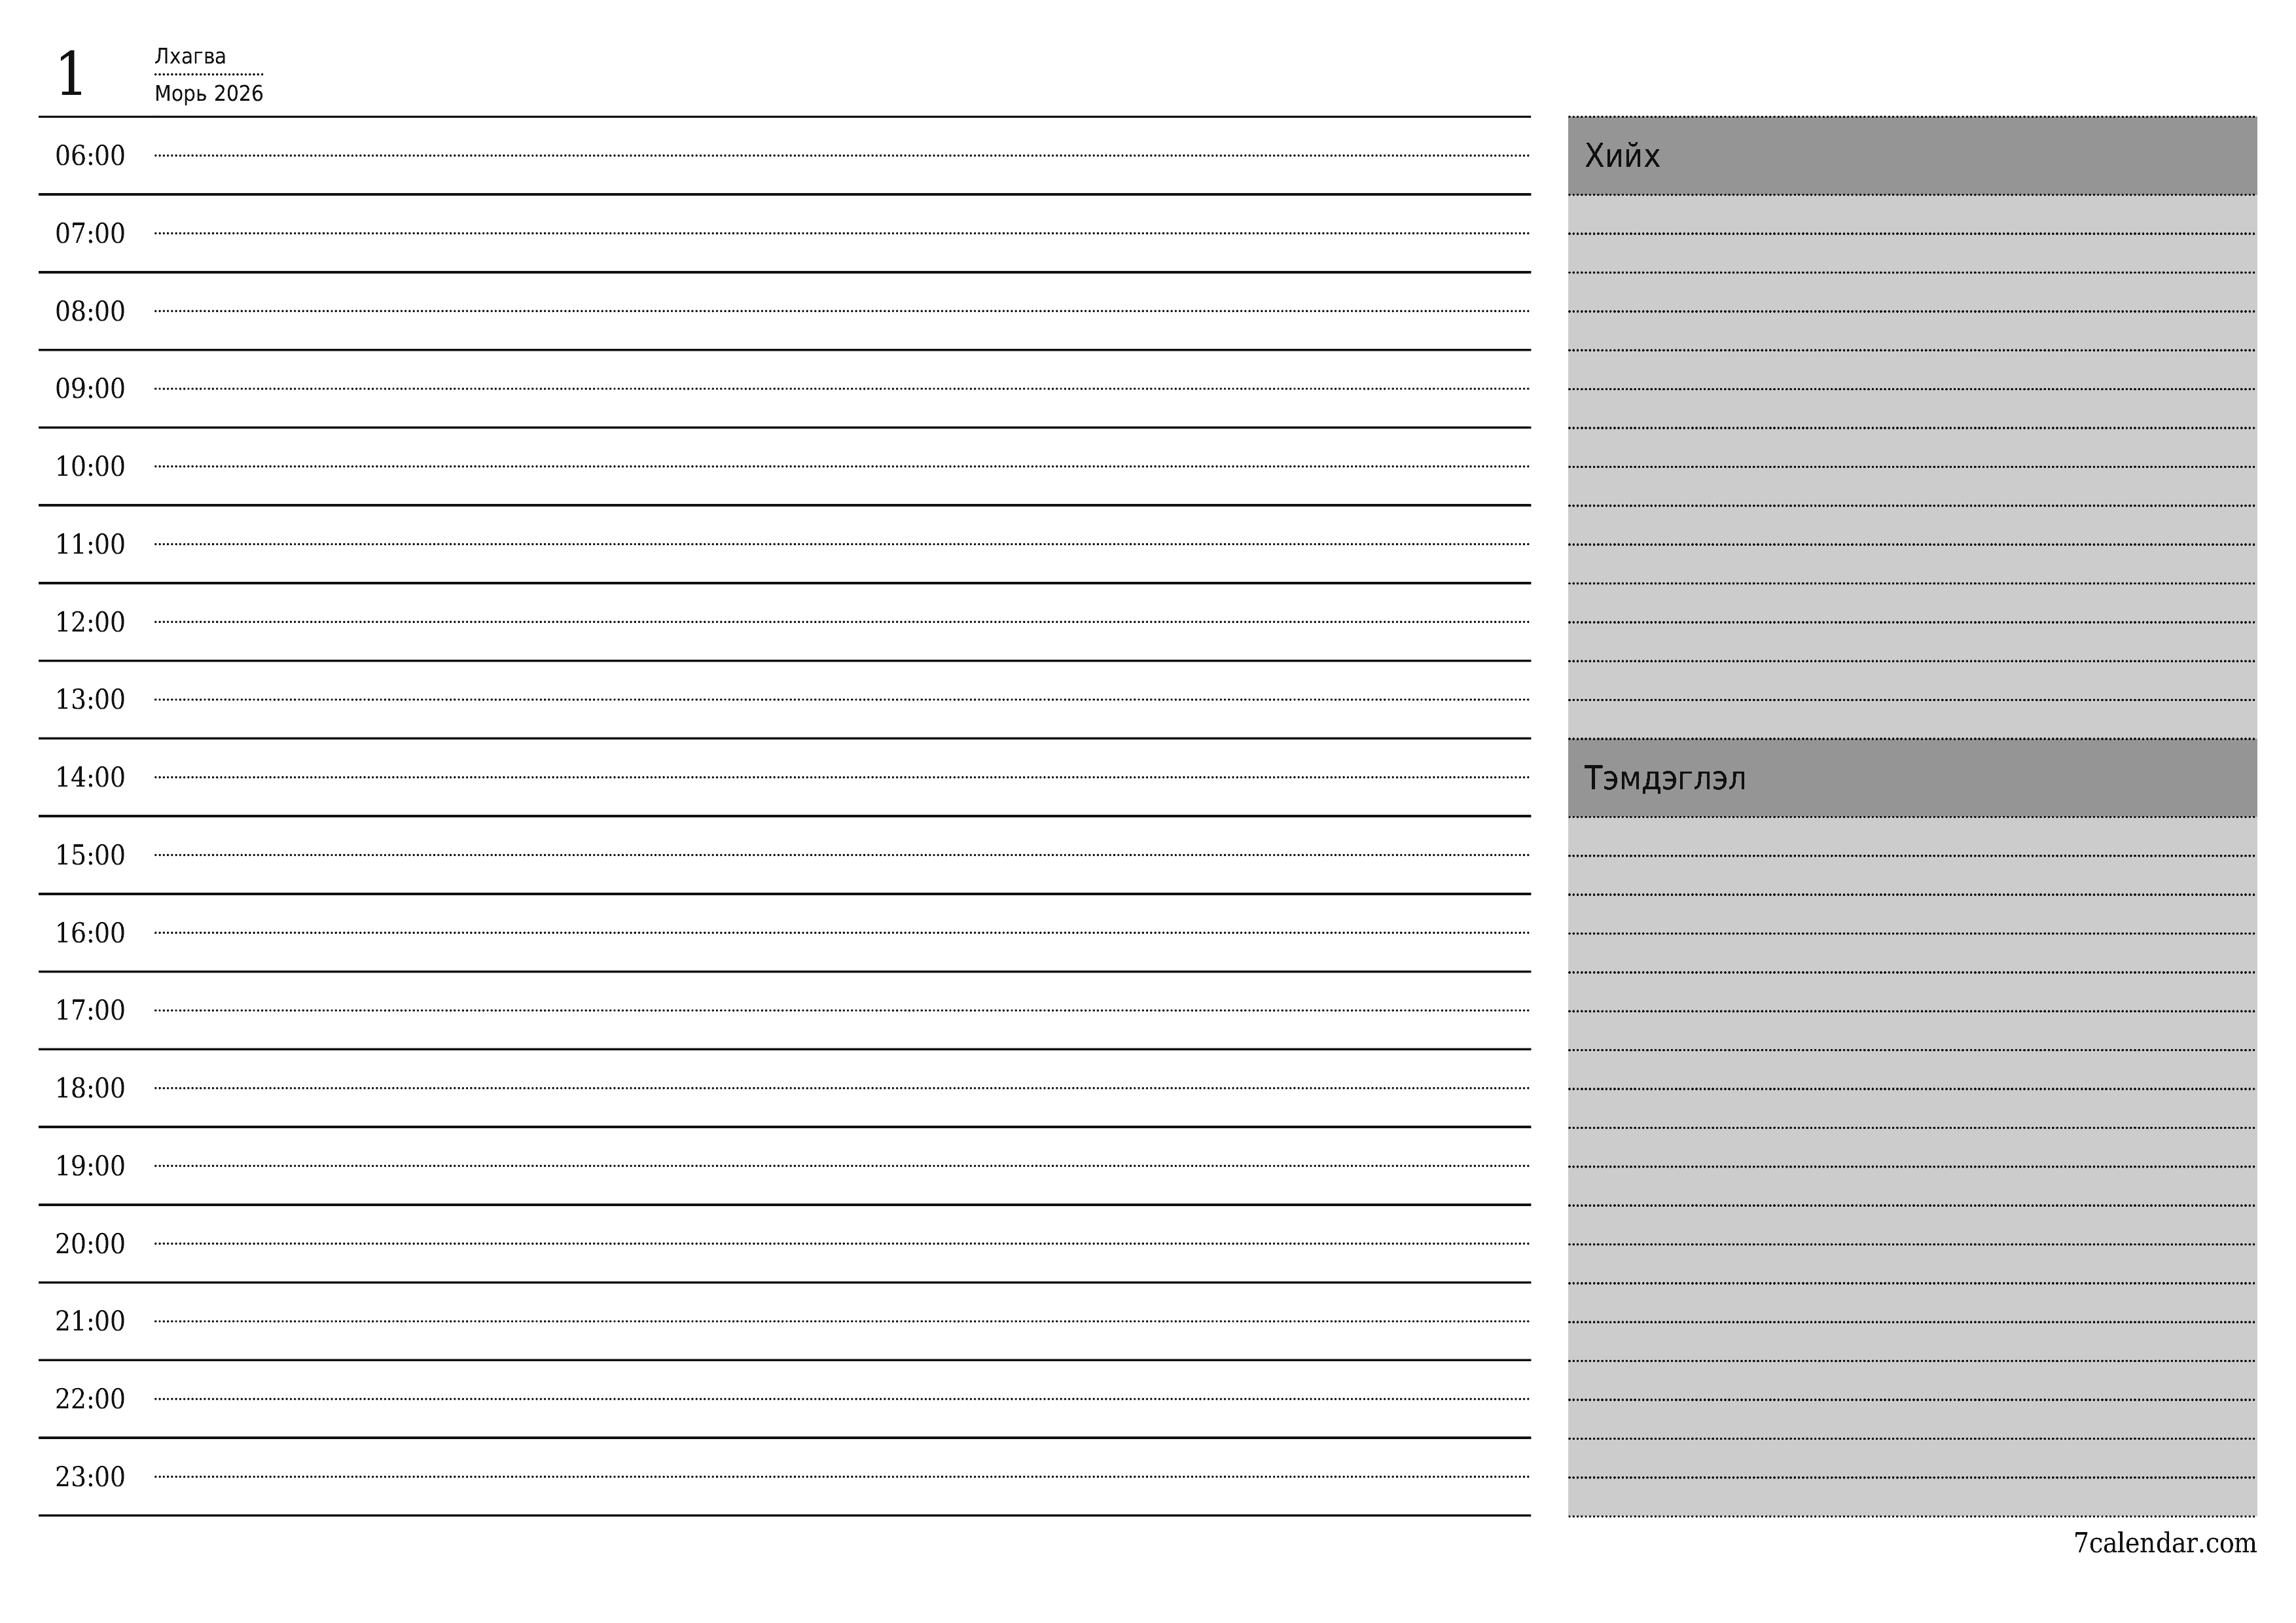 Өдөр тутмын төлөвлөгөөг Морь 2026 өдрийн тэмдэглэлтэй хамт хадгалж, PDF хэлбэрээр хадгалж, хэвлэ PNG Mongolian